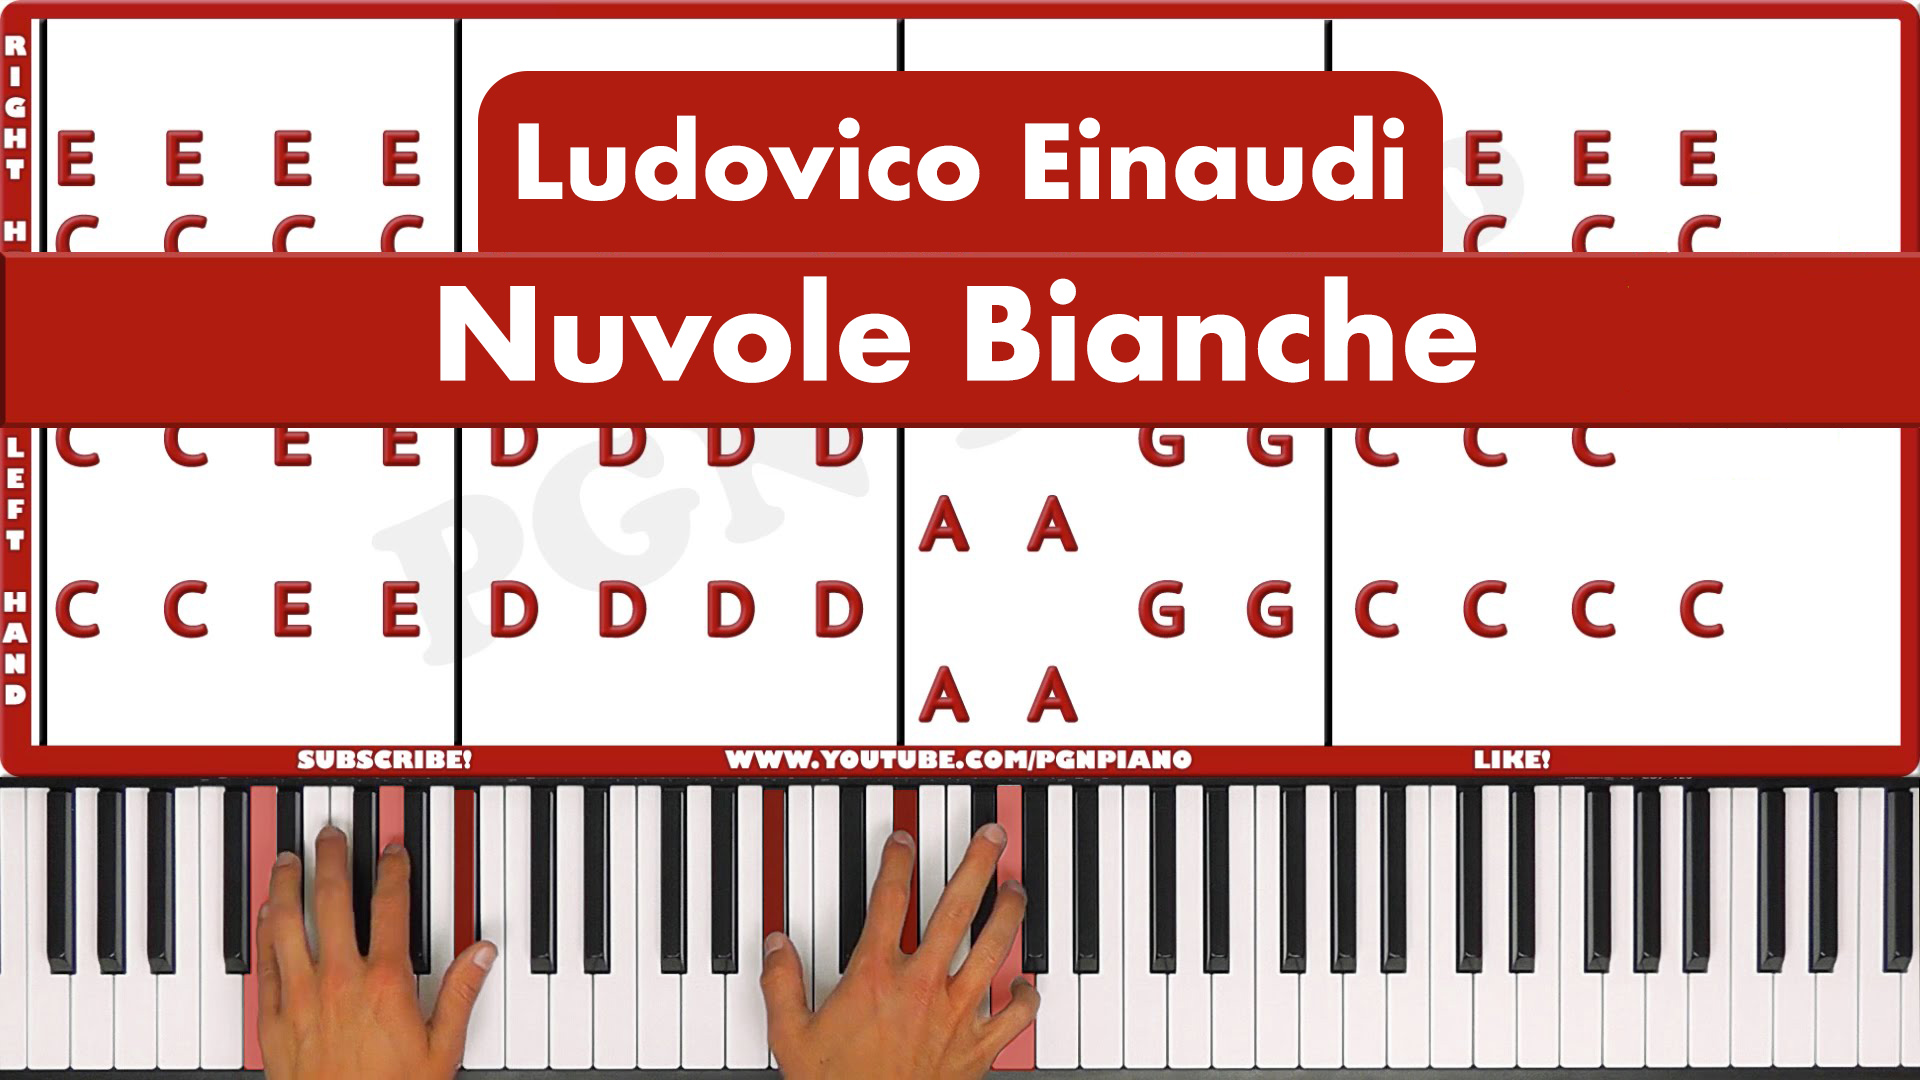 Ludovico Einaudi – Nuvole Bianche – Original